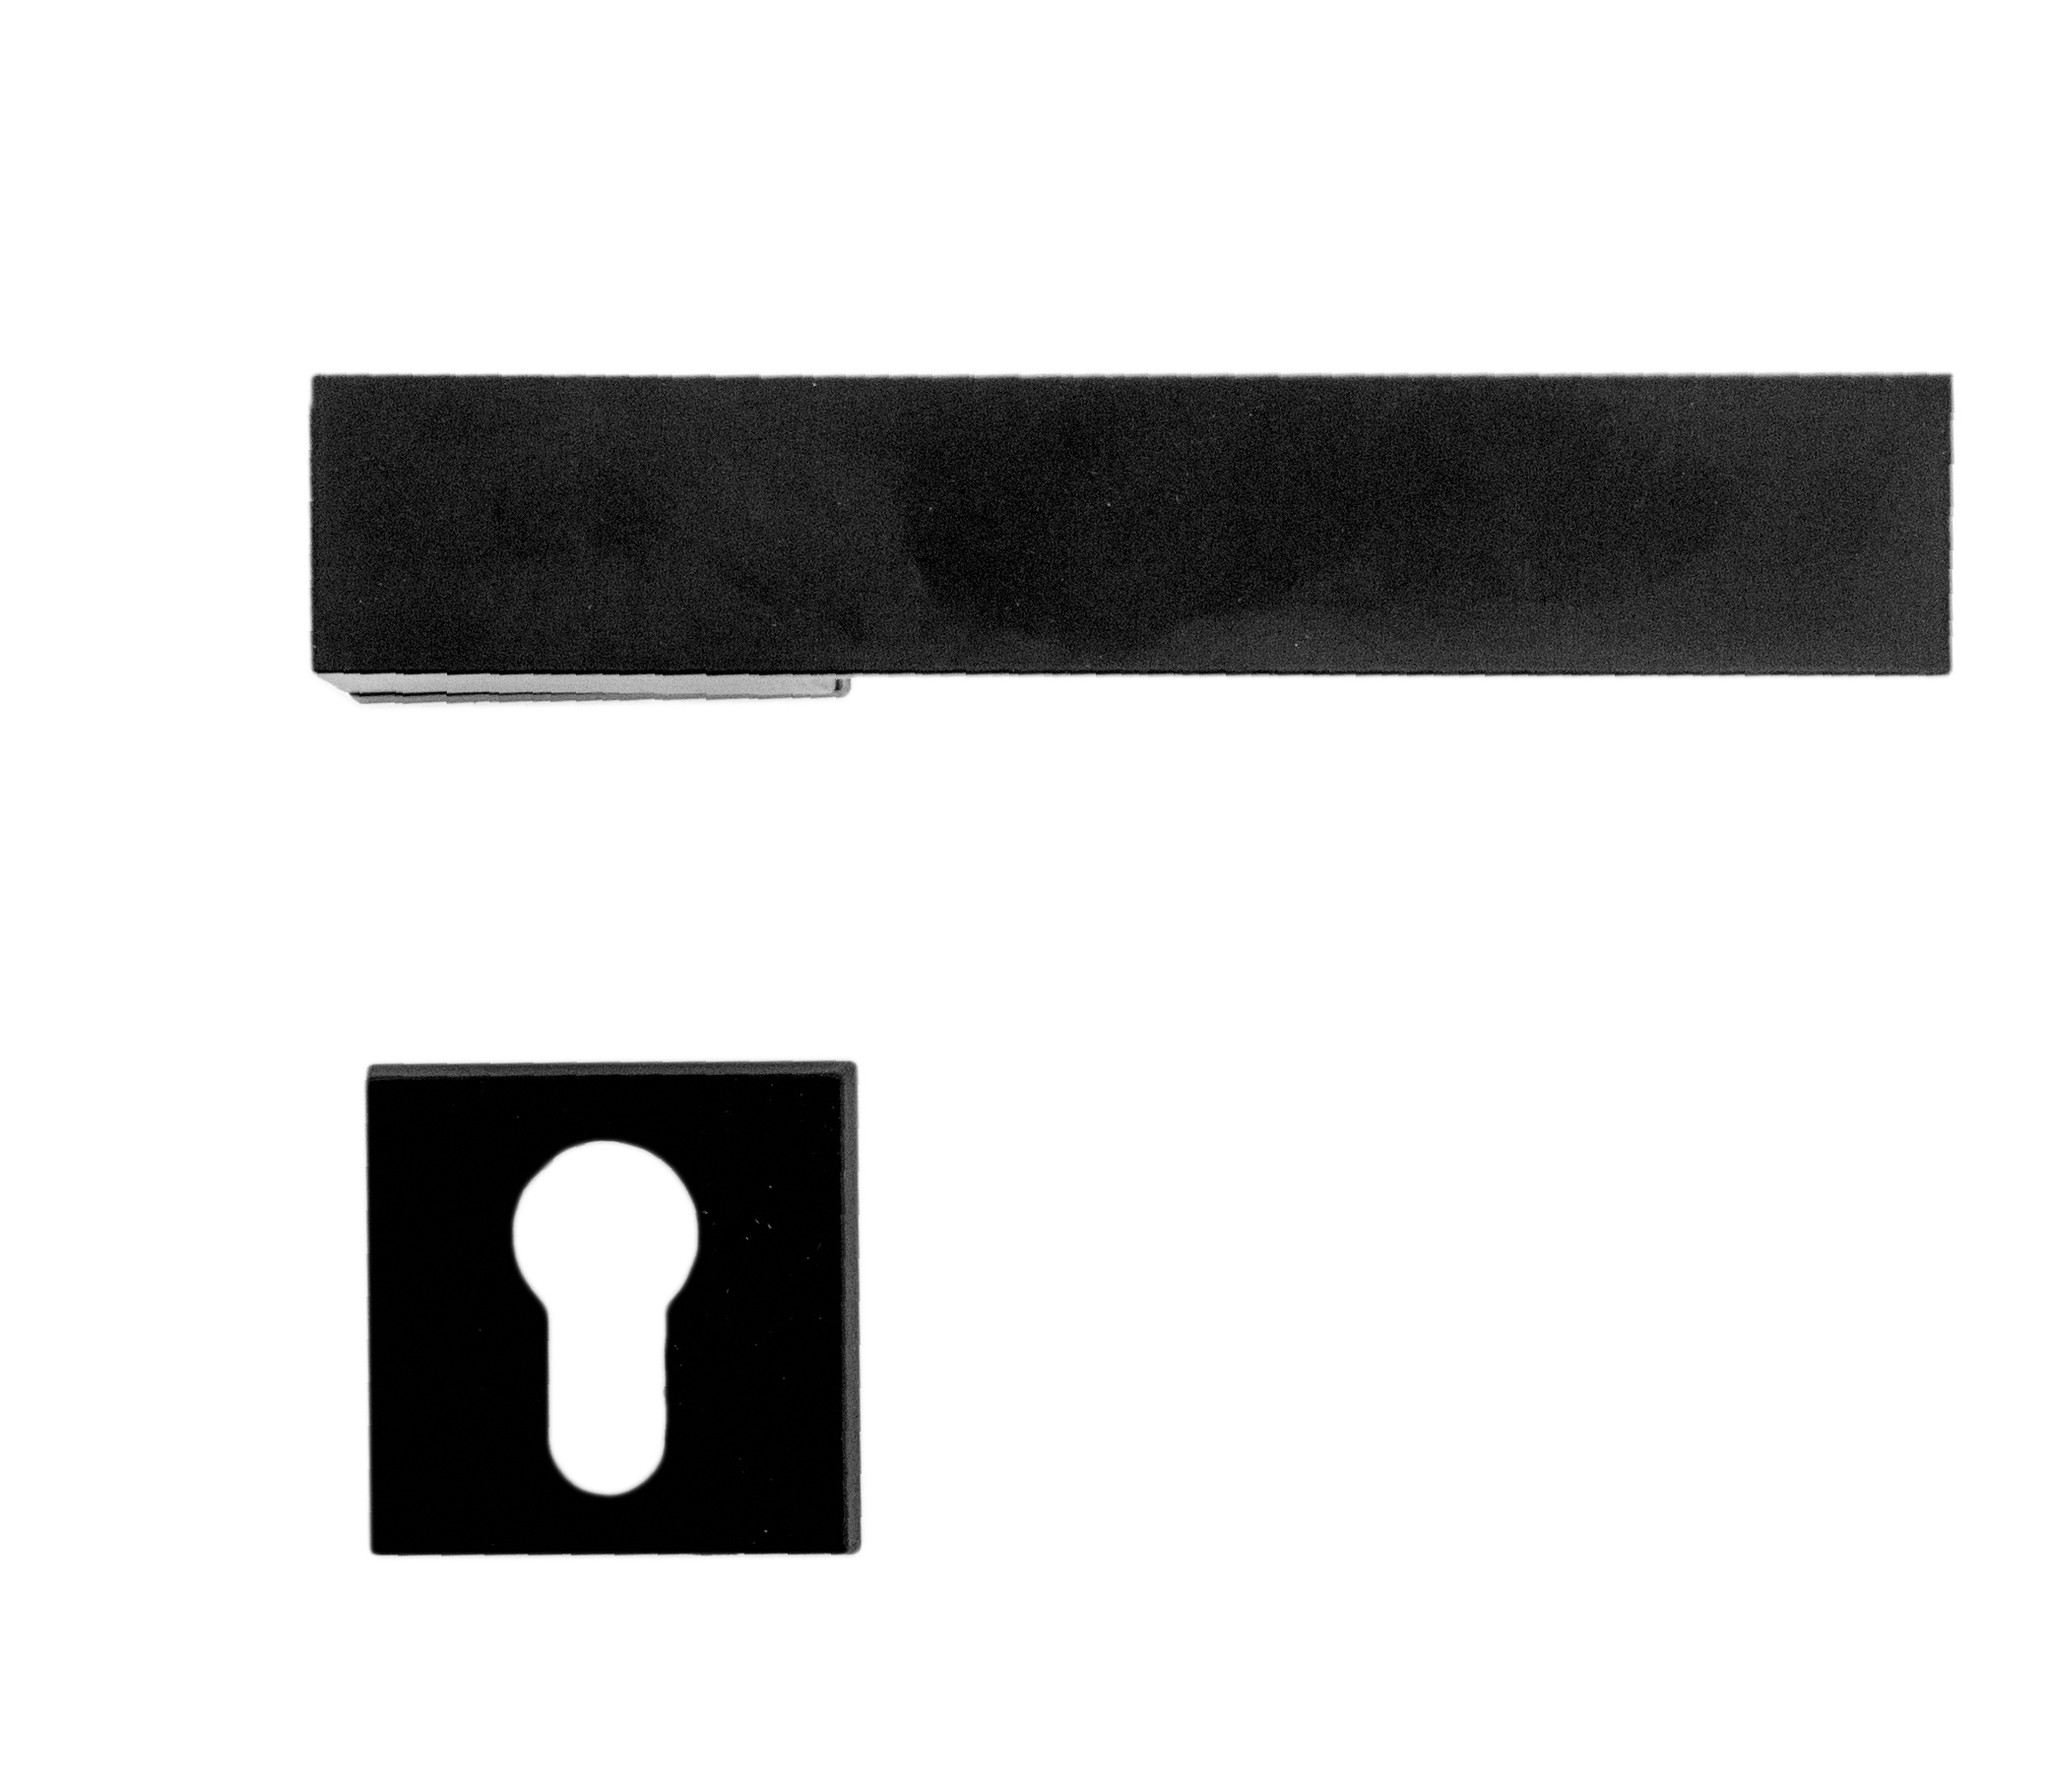 Black door handles with cylinder plates